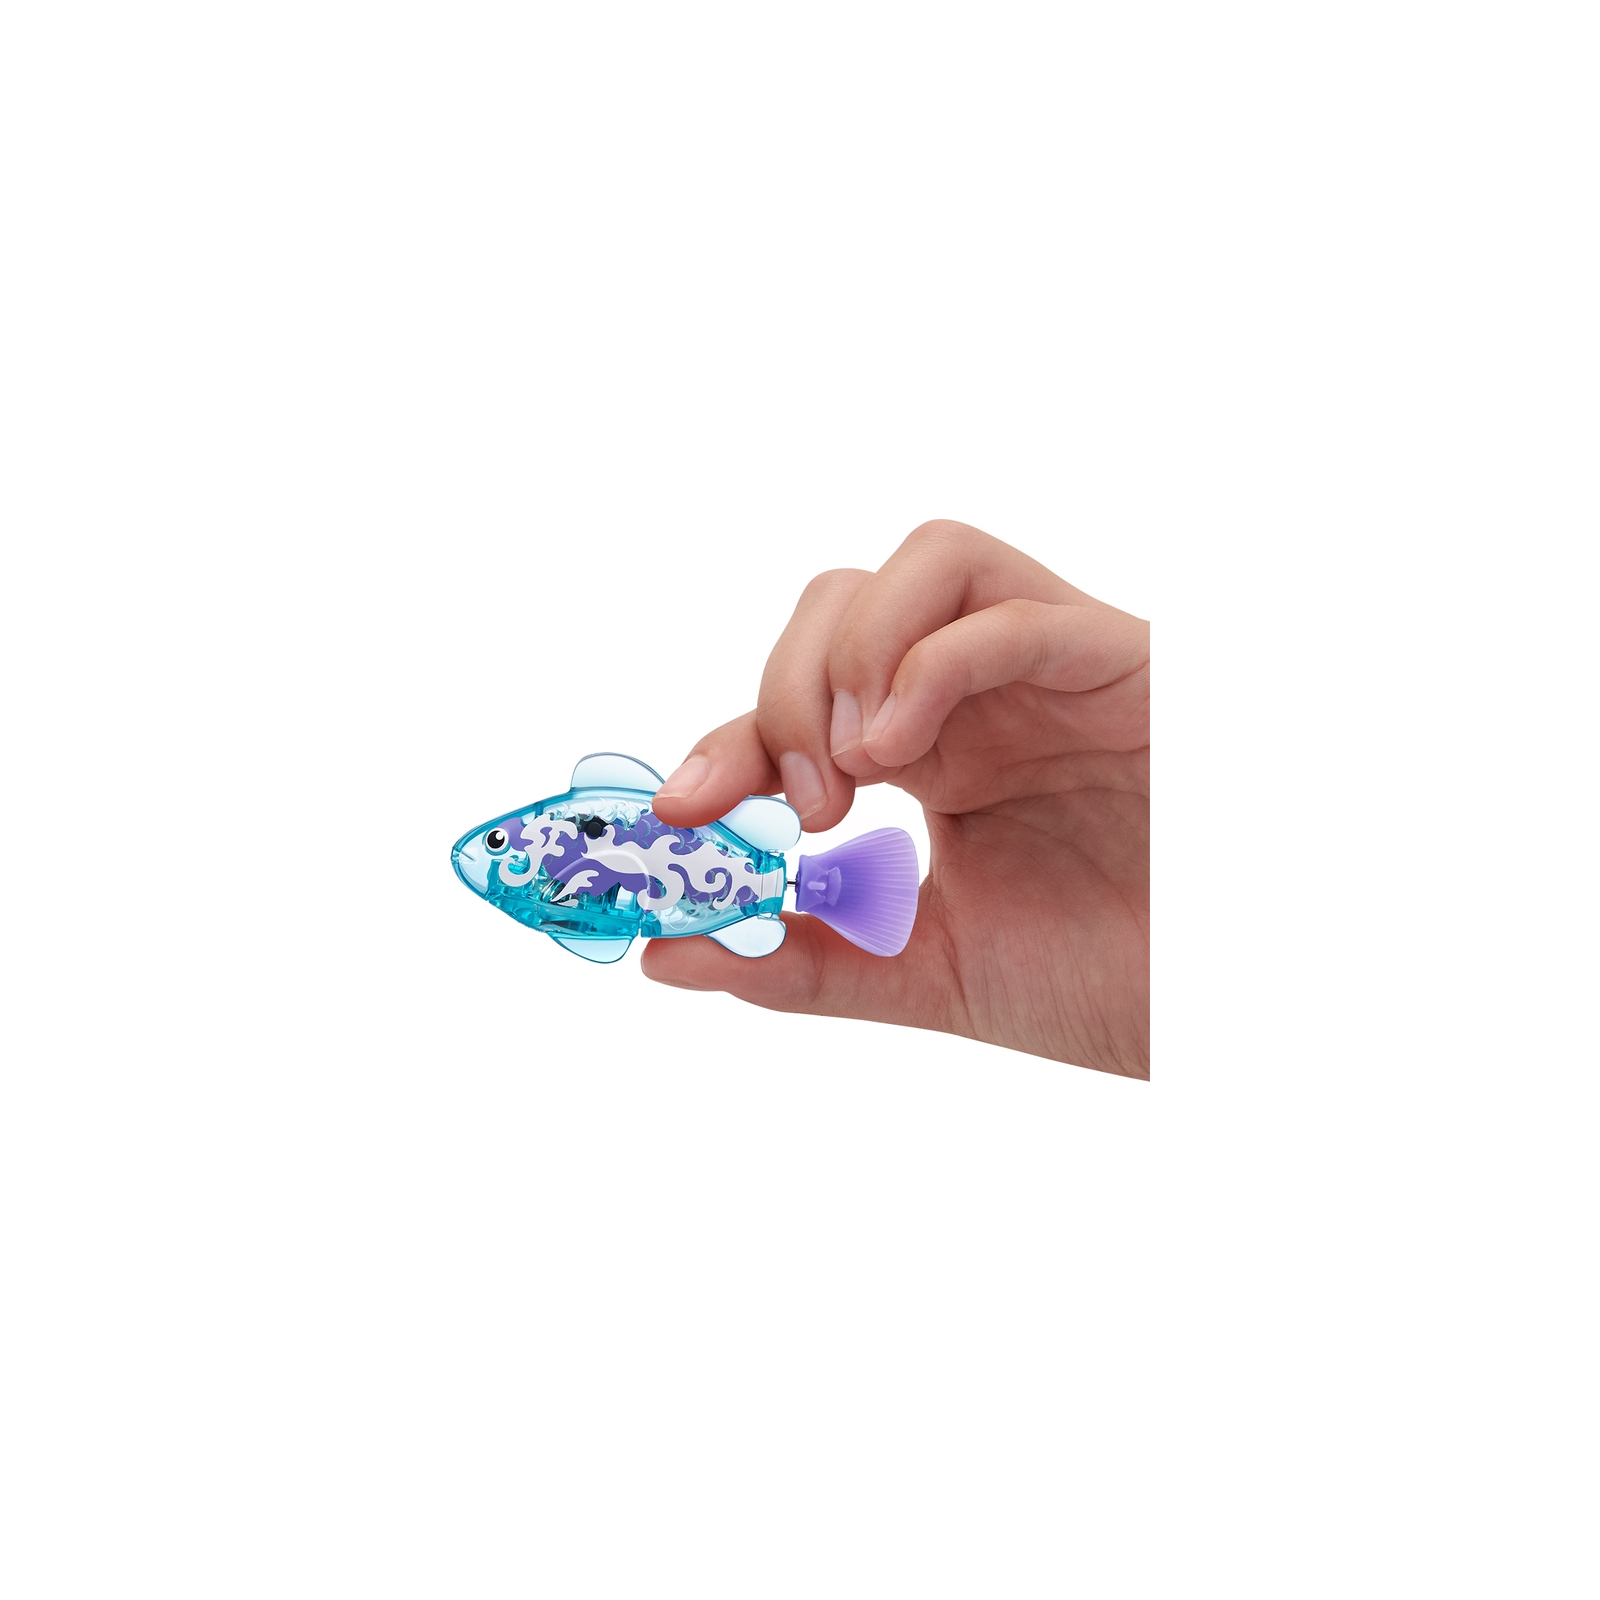 Интерактивная игрушка Pets & Robo Alive S3 - Роборыбка (голубая) (7191-3) изображение 4